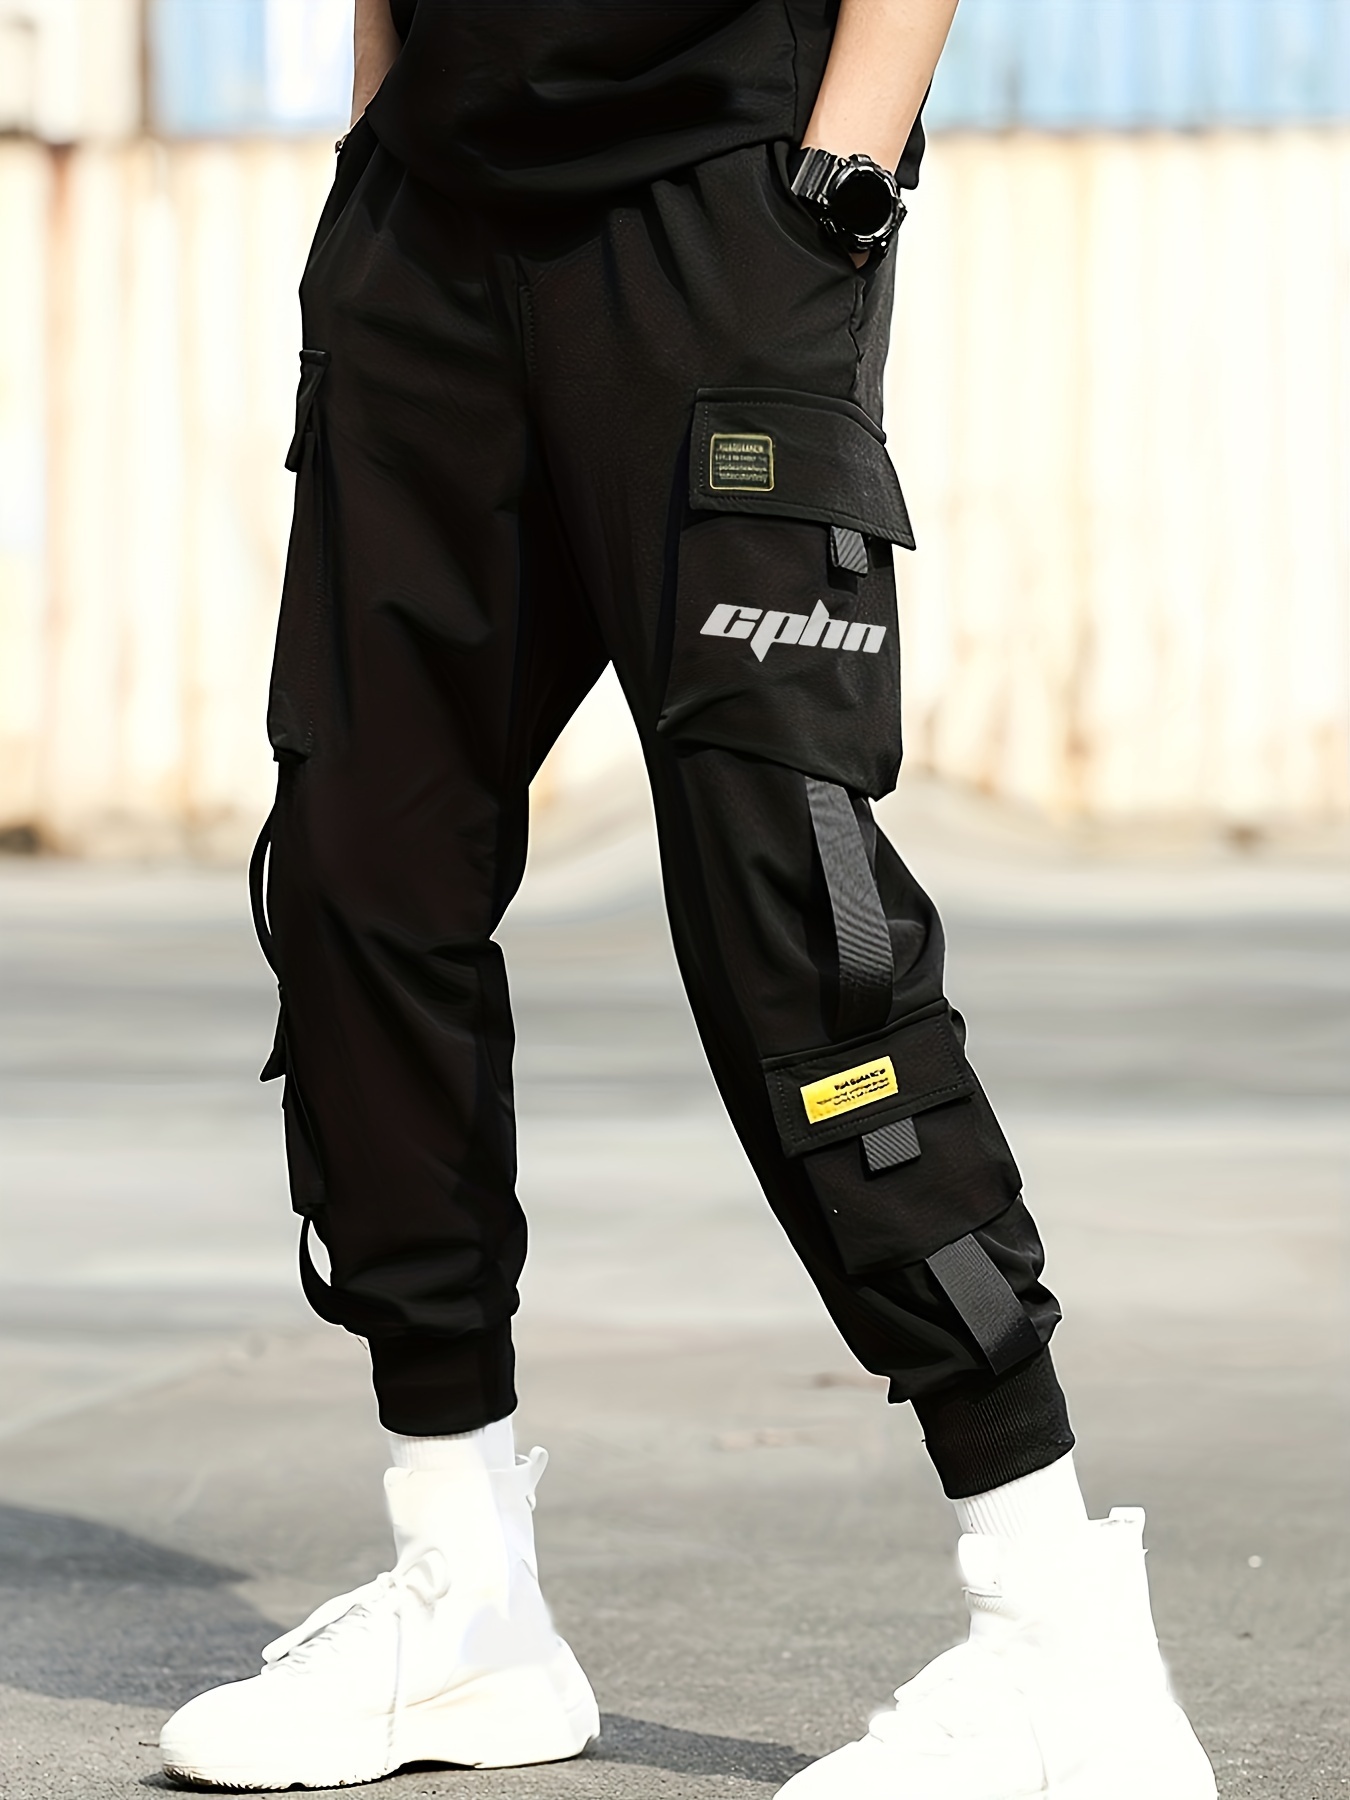 Classic Design Multi Flap Pockets Cargo Pants,Men's Loose Fit ...